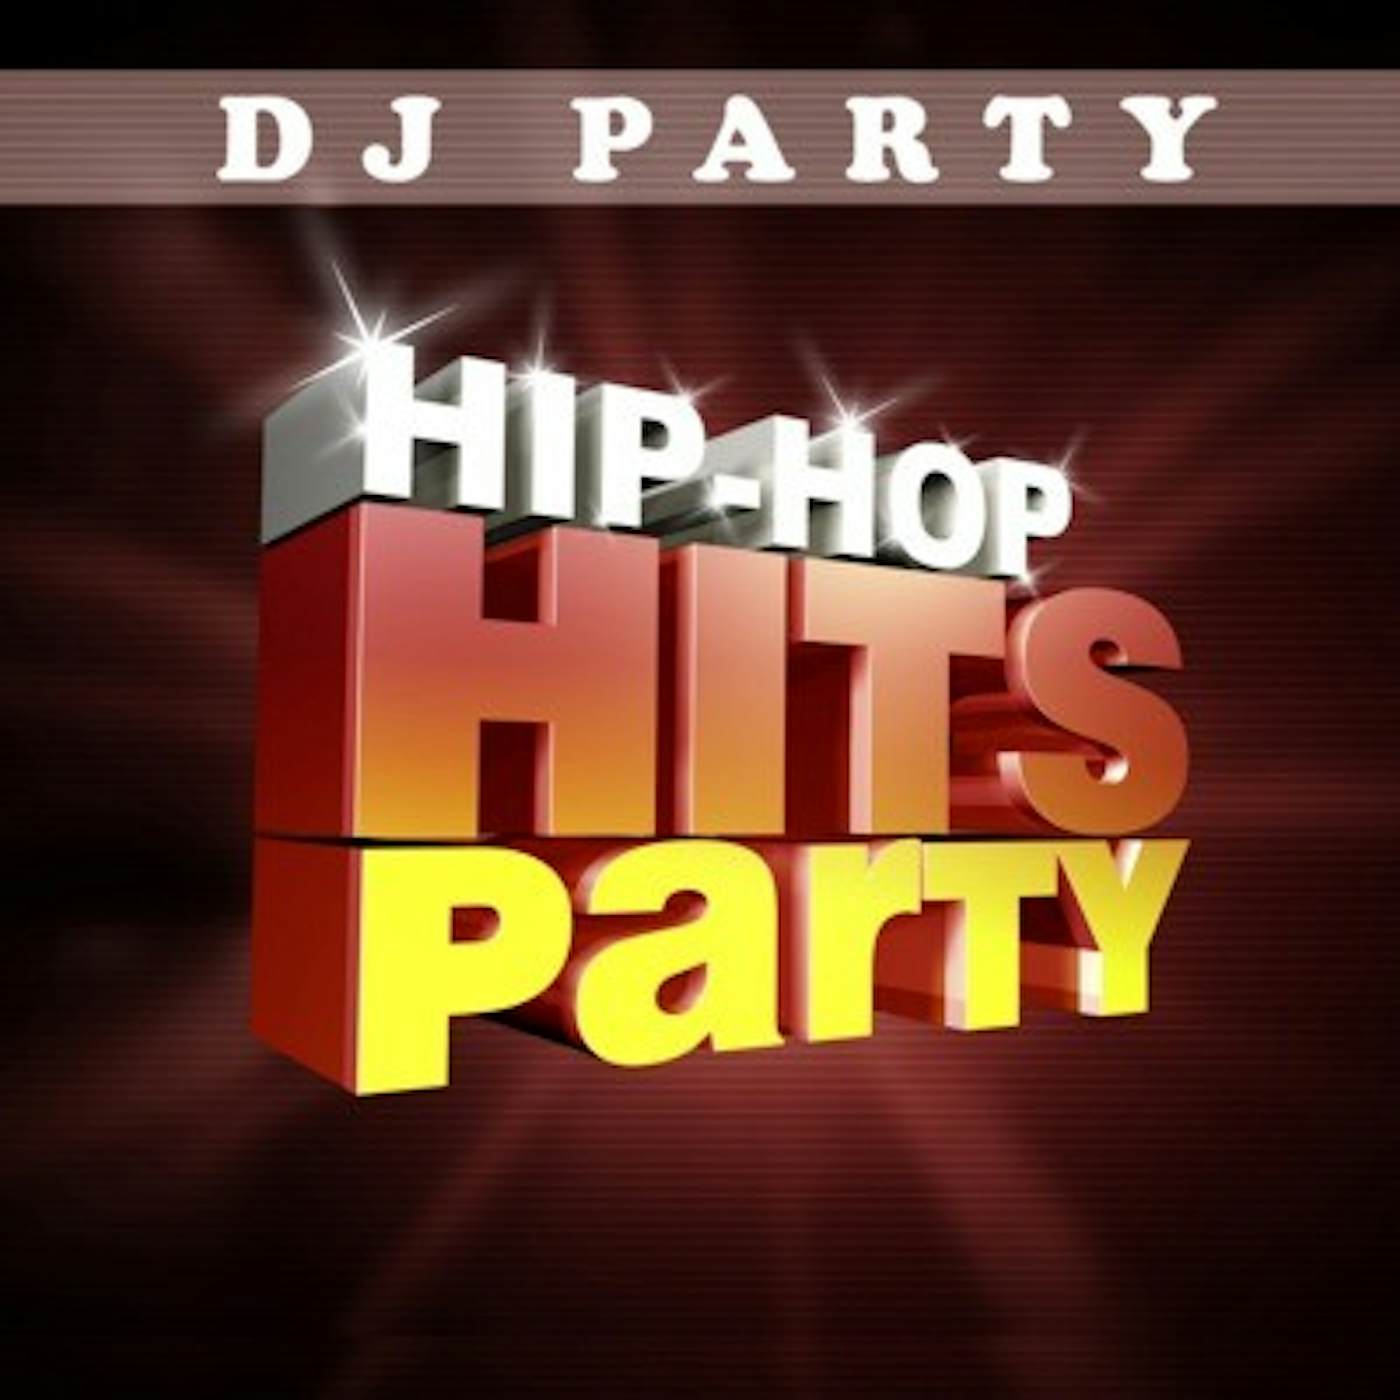 DJ Party HIP HOP HITS PARTY VOL. 1 CD